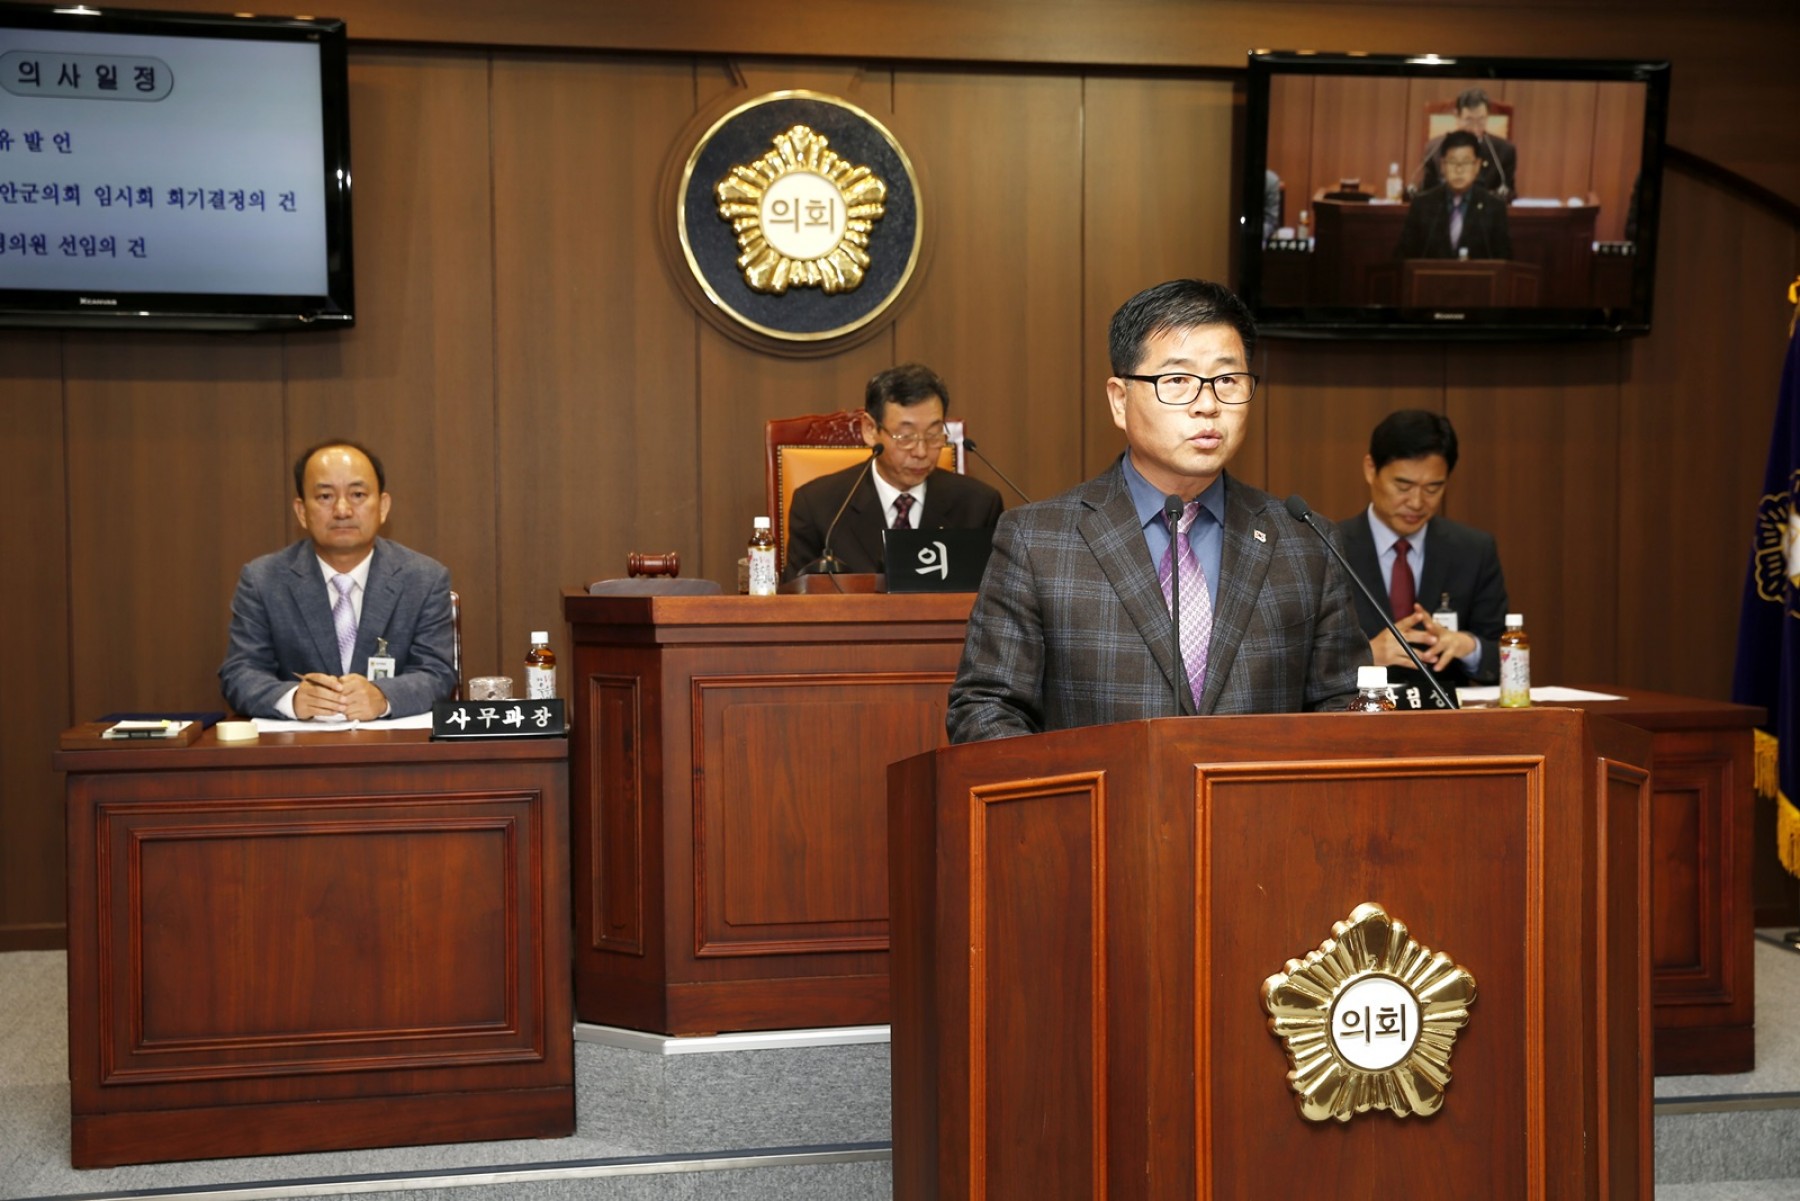 태안군의회 조혁 의원, 소근진성의 가치와 보존의 필요성 제기